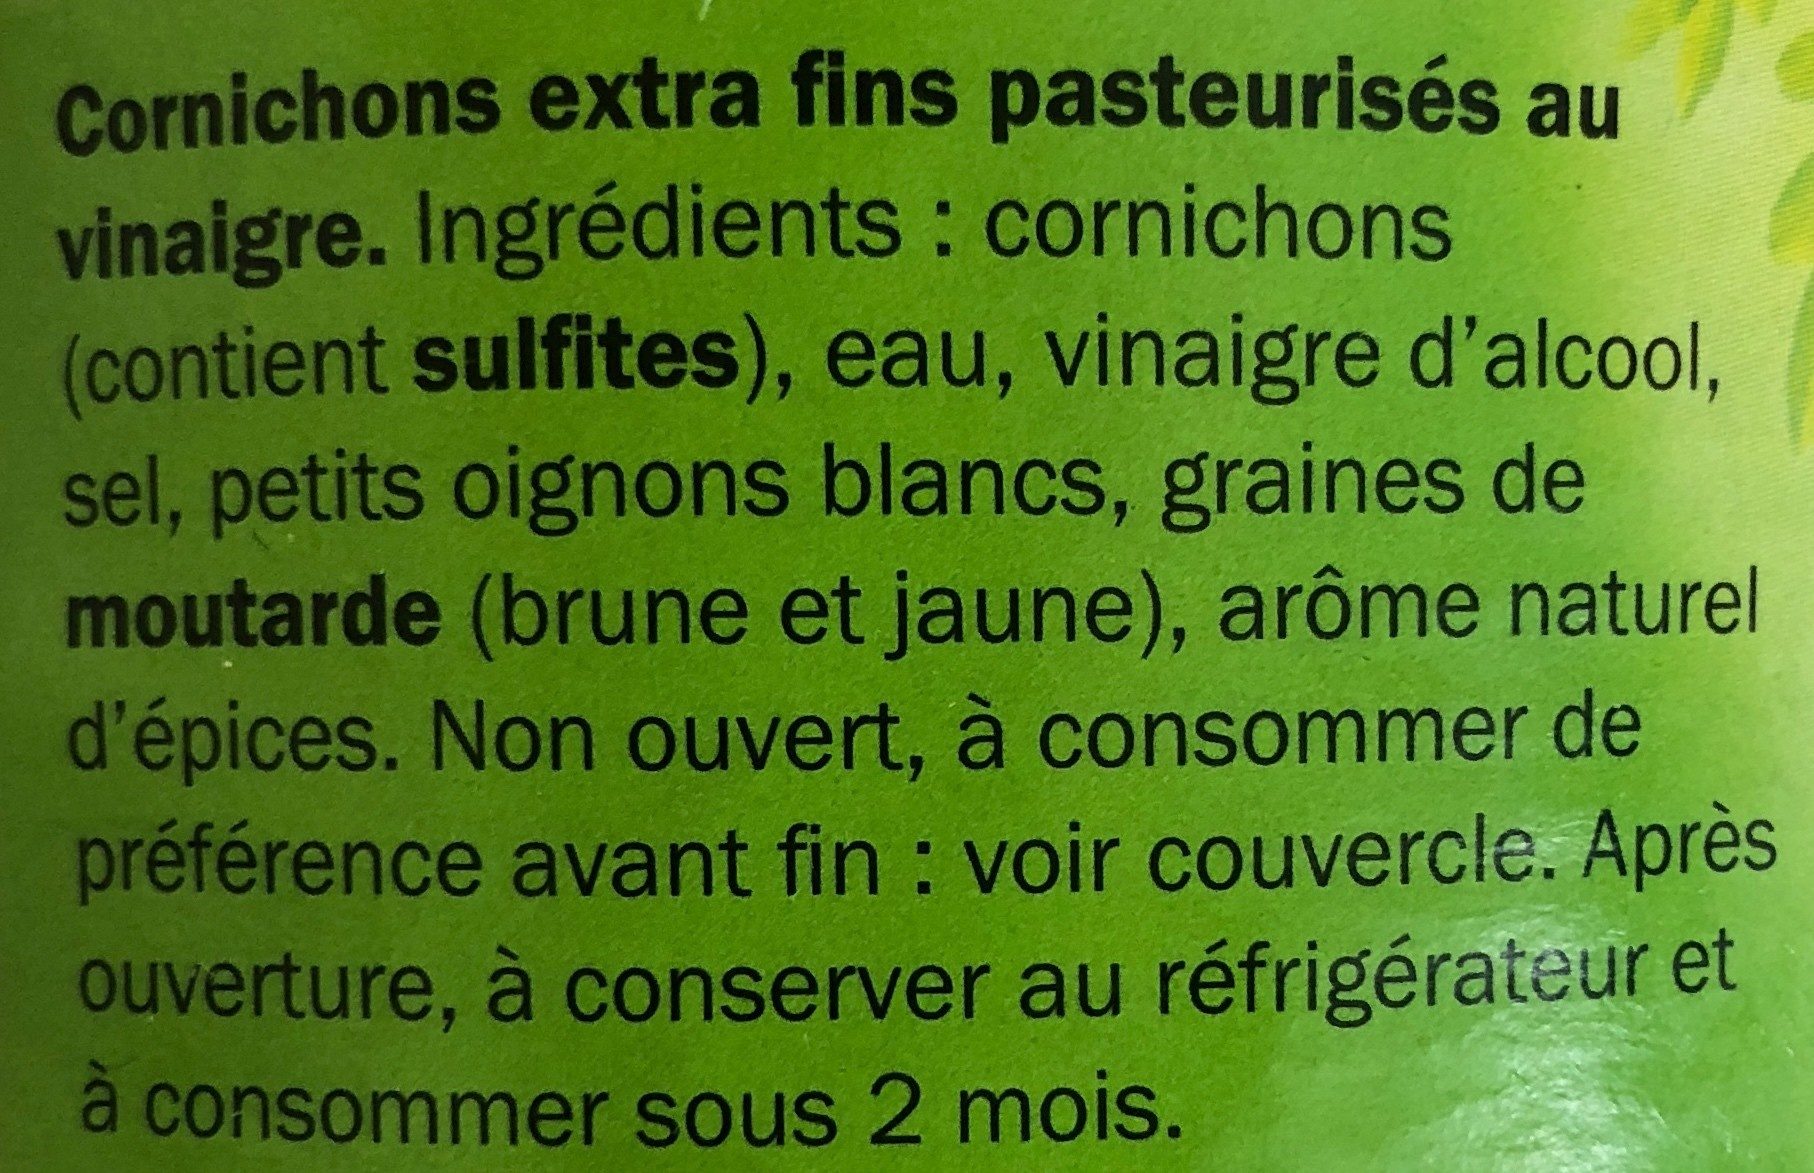 Cornichons - extra fins - Ingrédients - fr